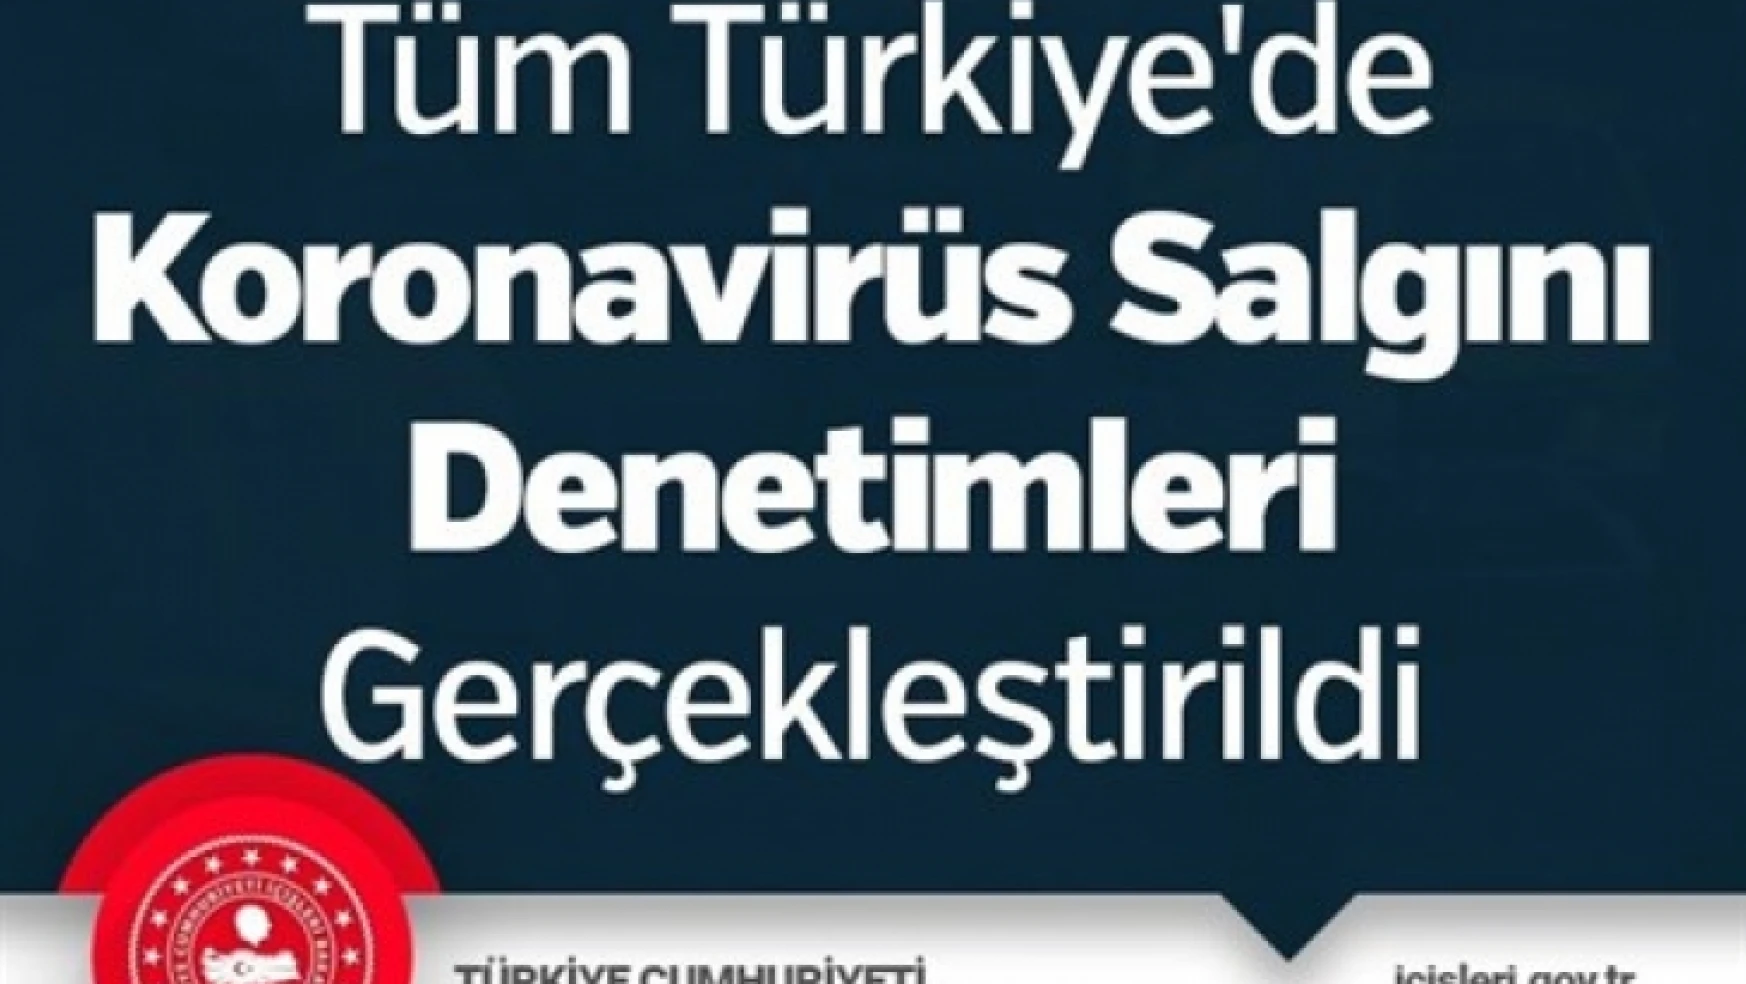 Tüm Türkiye'de Koronavirüs Salgını Denetimleri Gerçekleştirildi